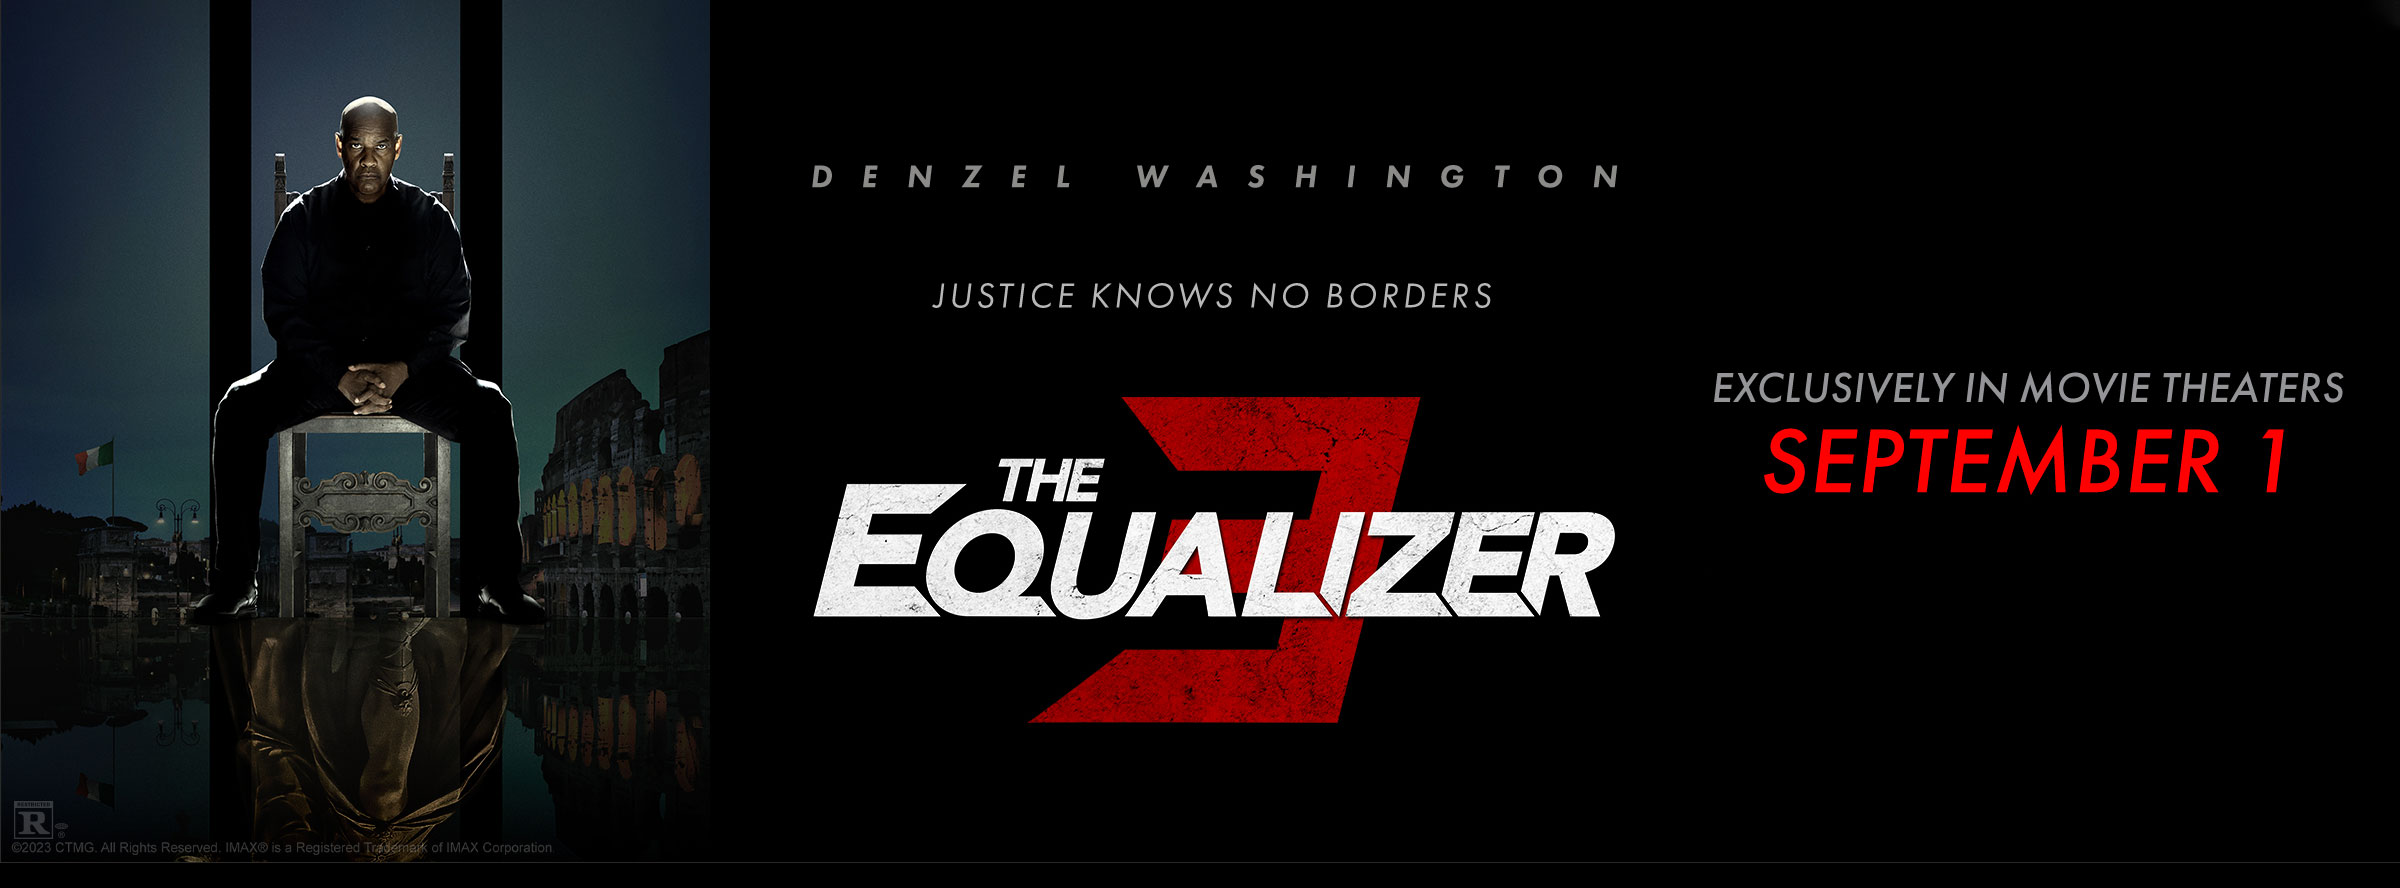 Slider Image for Equalizer 3, The